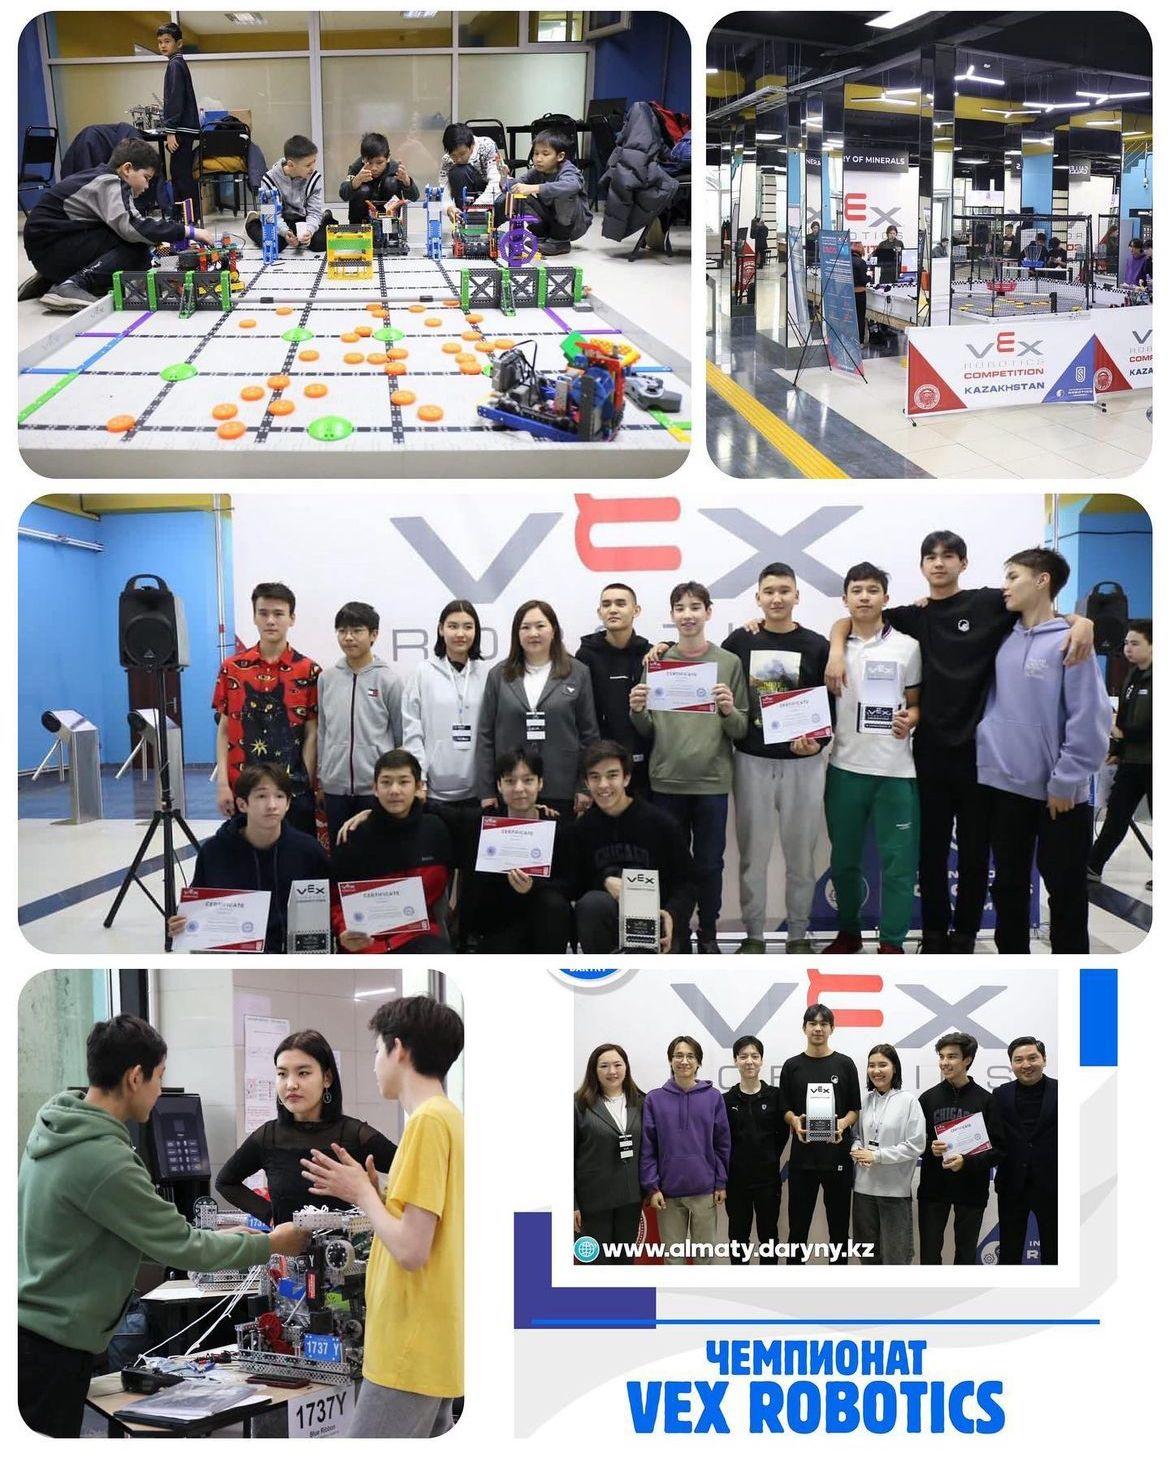 VEX робототехника бойынша Қазақстанның Ұлттық чемпионаты